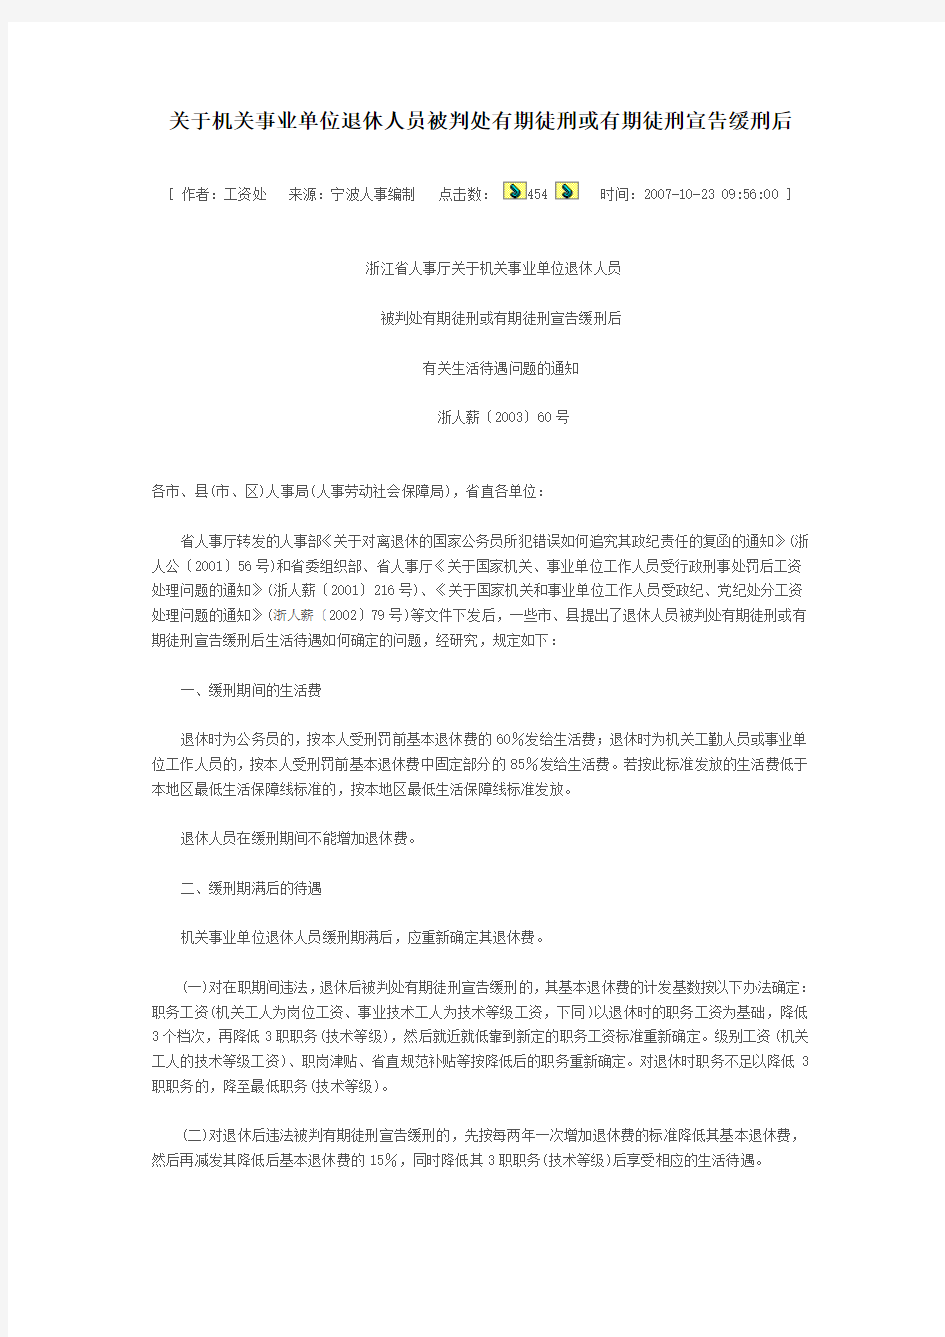 浙江省人事厅关于机关事业单位退休人员